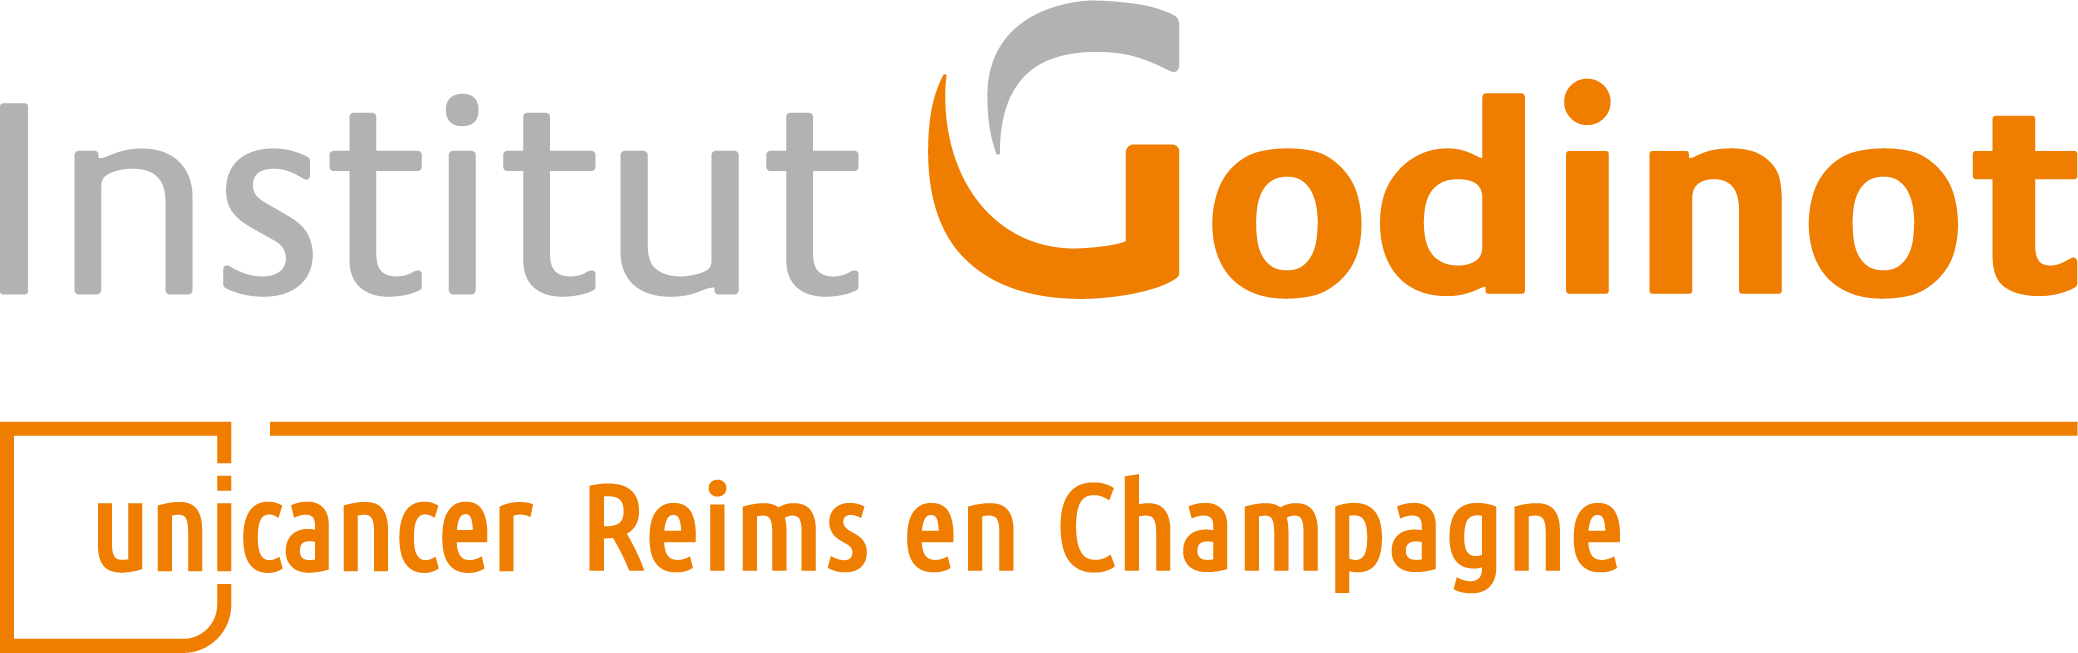 Institut Jean Godinot